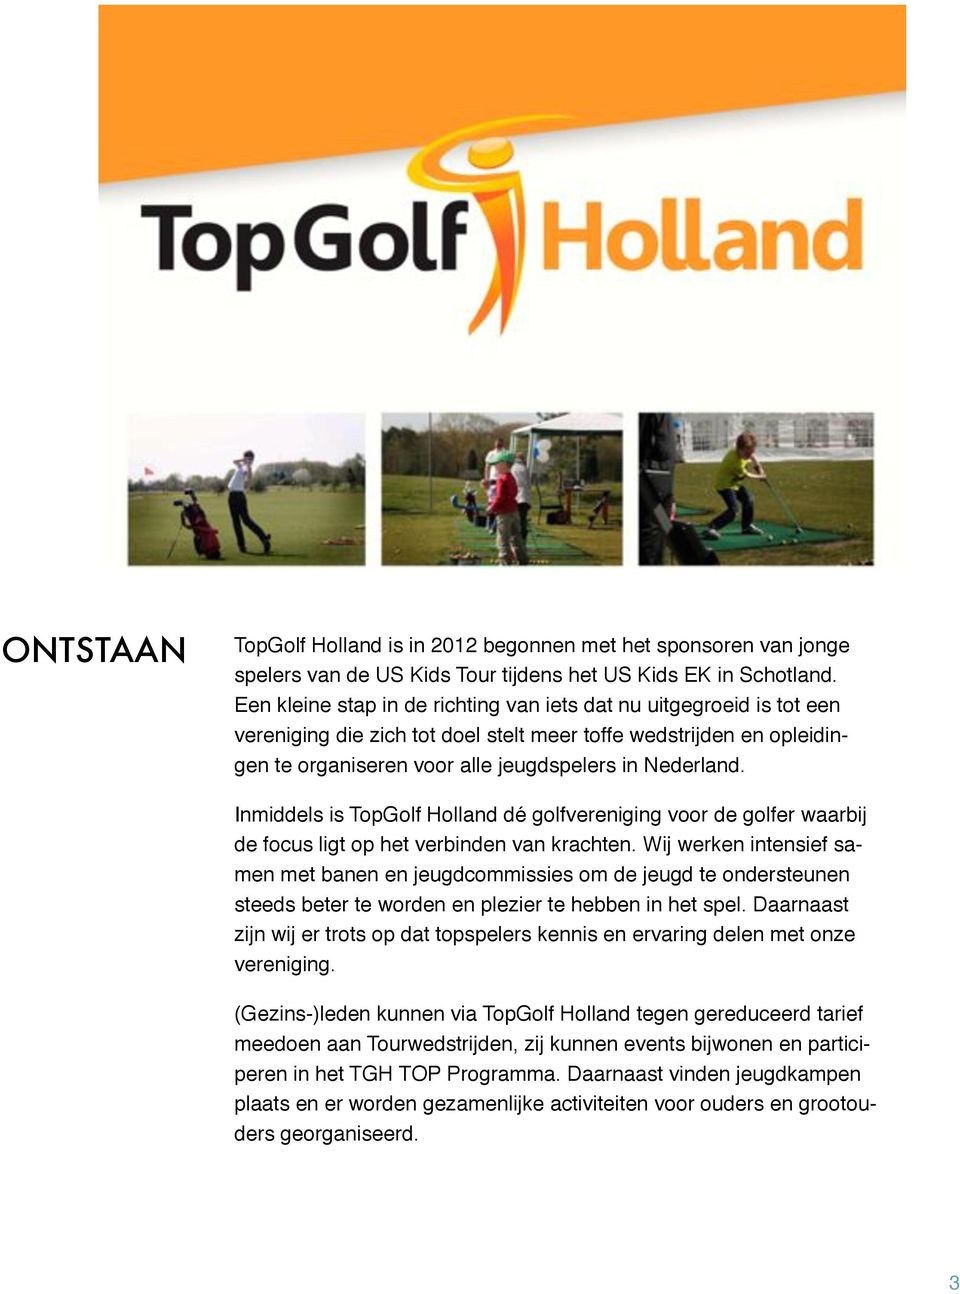 Inmiddels is TopGolf Holland dé golfvereniging voor de golfer waarbij de focus ligt op het verbinden van krachten.